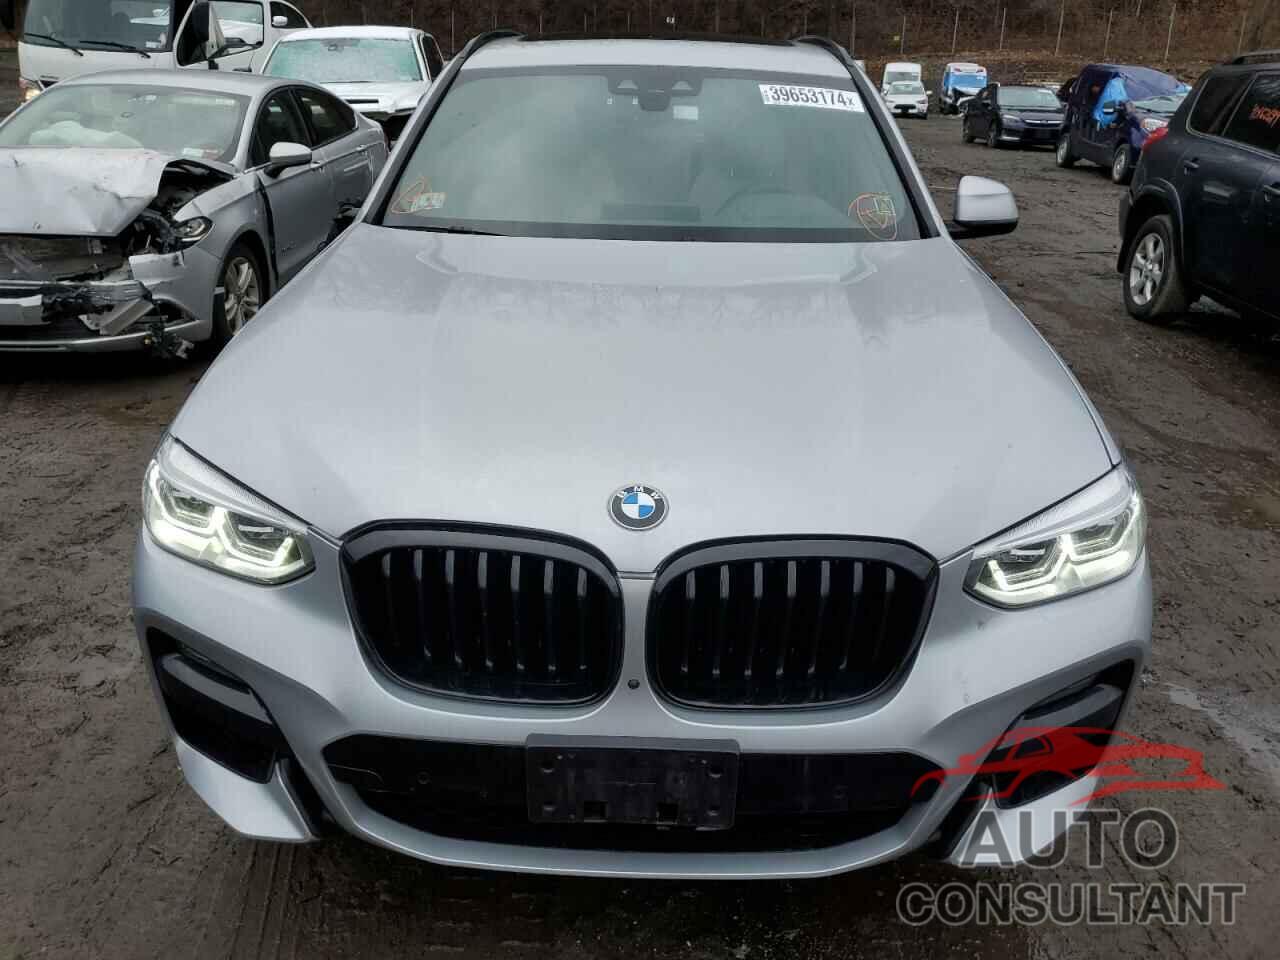 BMW X3 2021 - 5UXTY5C07M9H14838